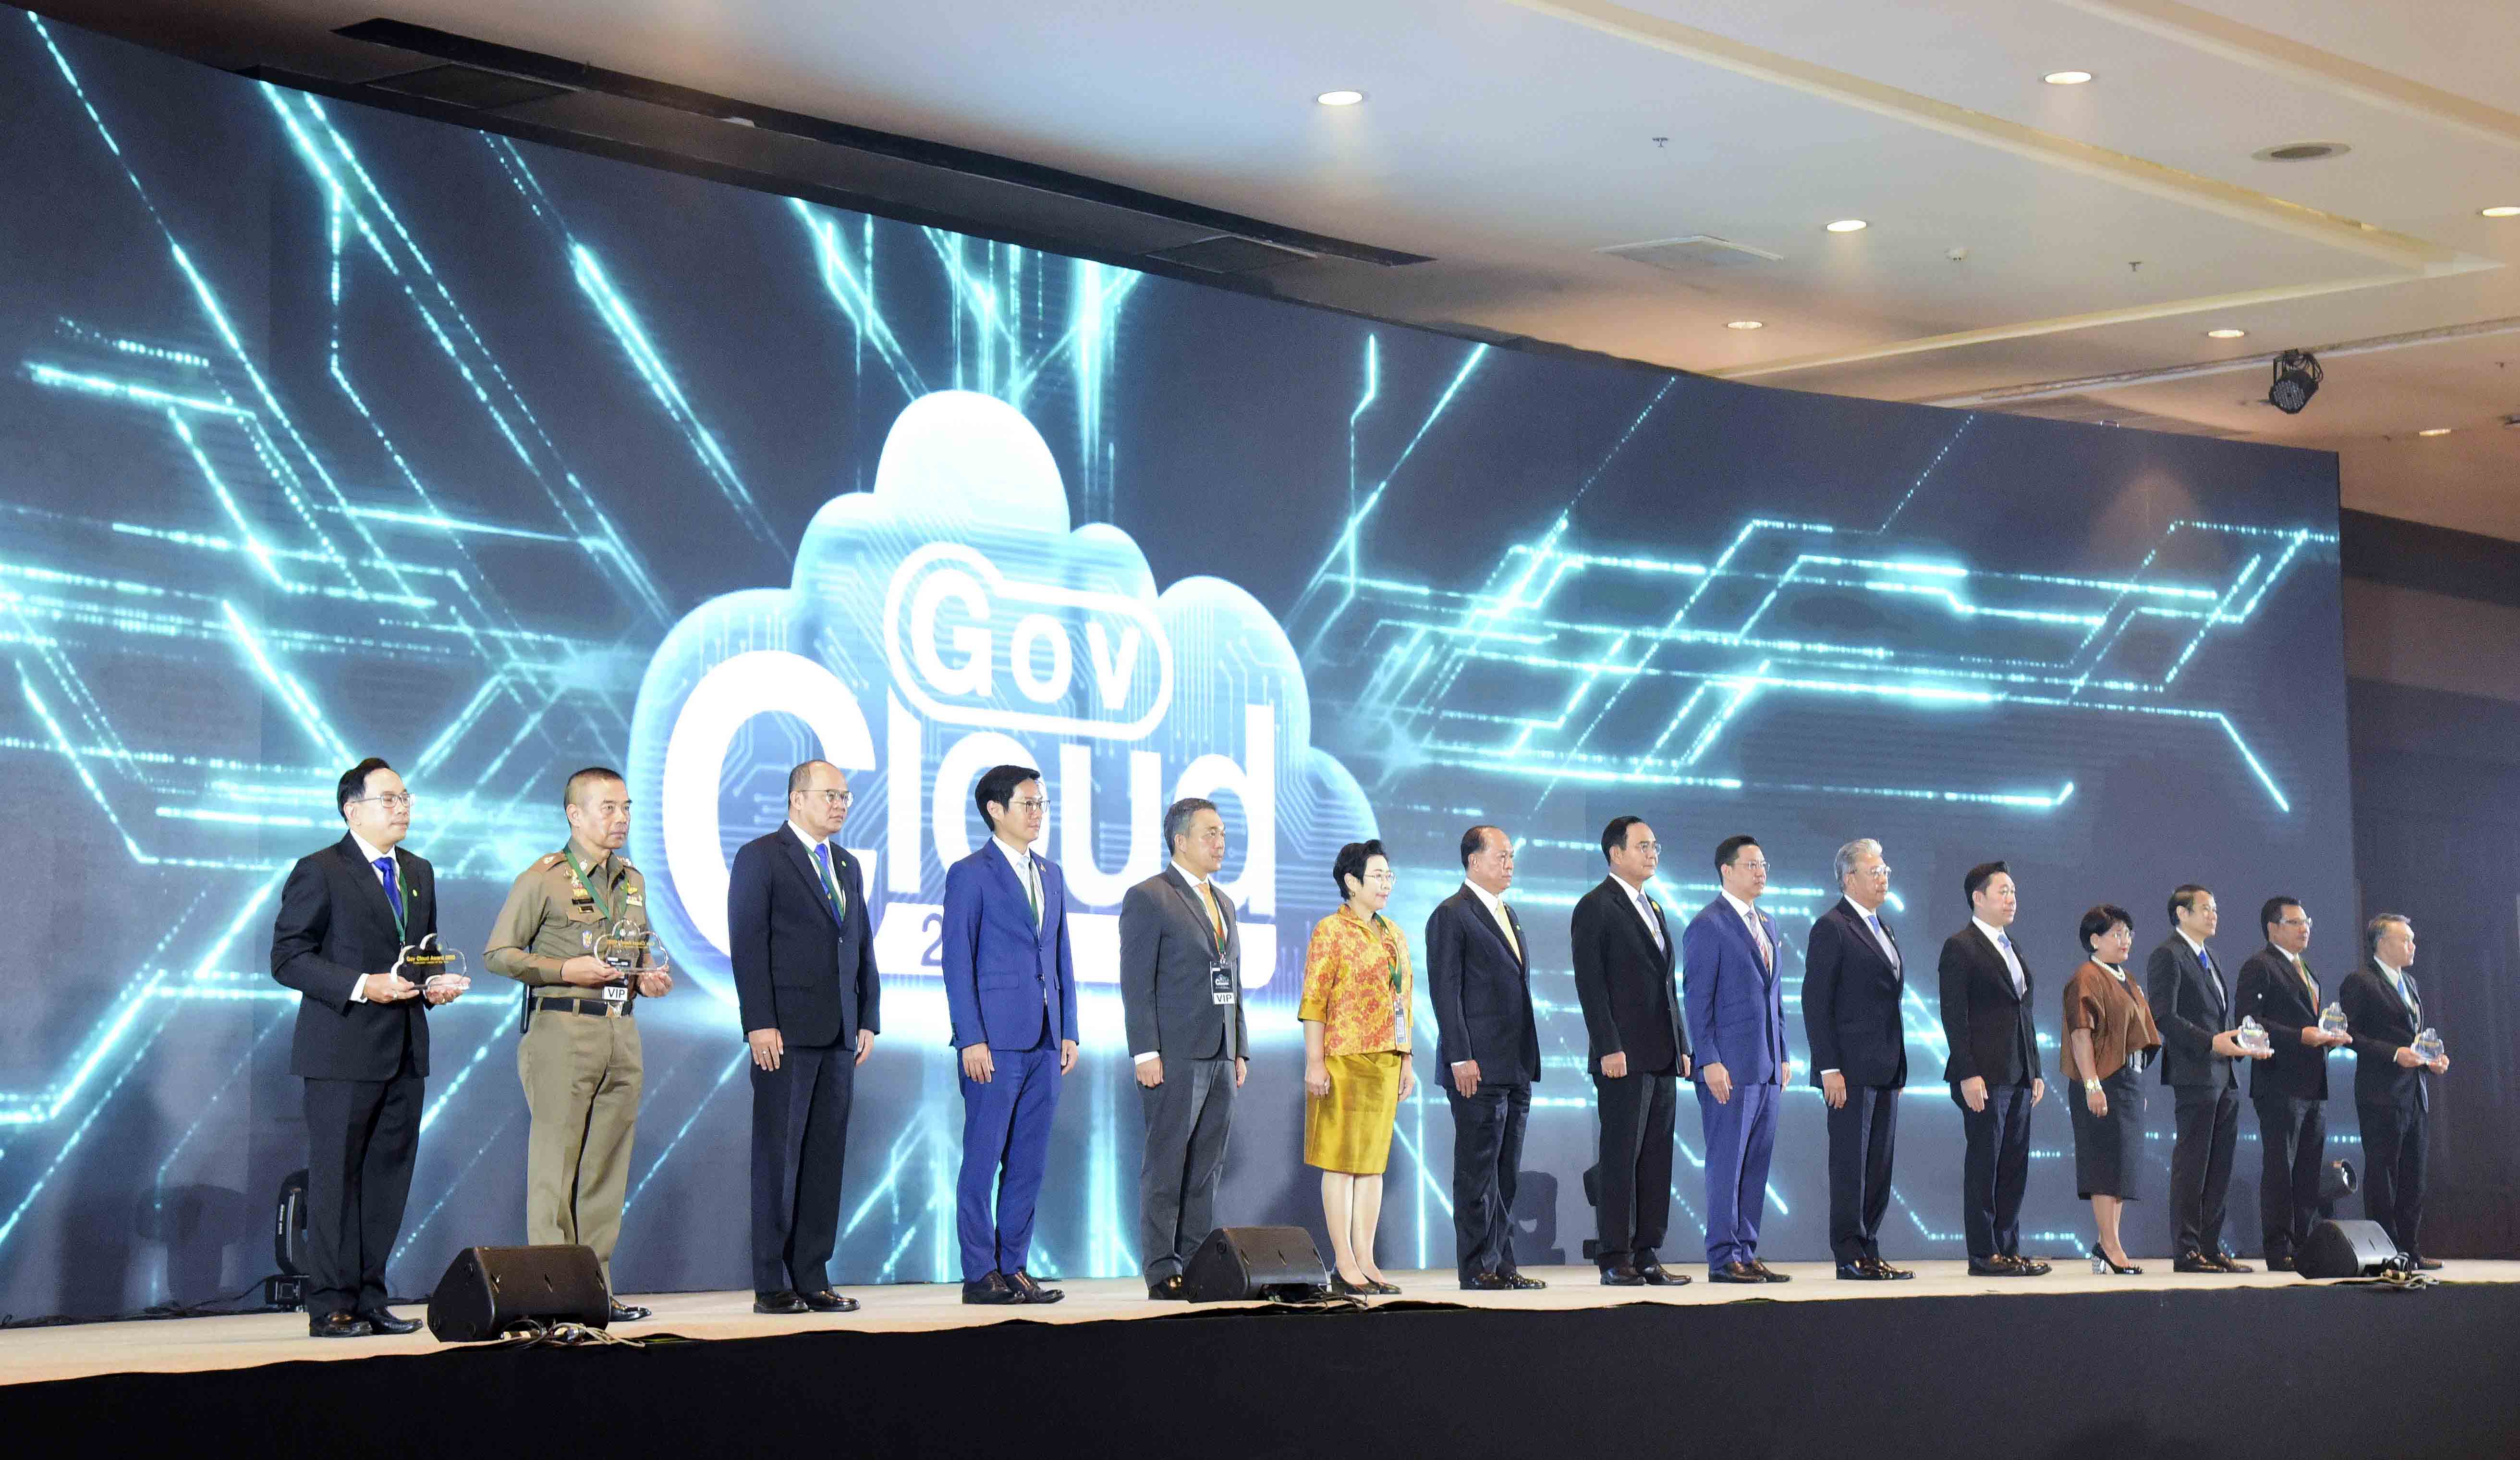 งานสัมมนา Gov Cloud 2020 “The Future of Digital Government”